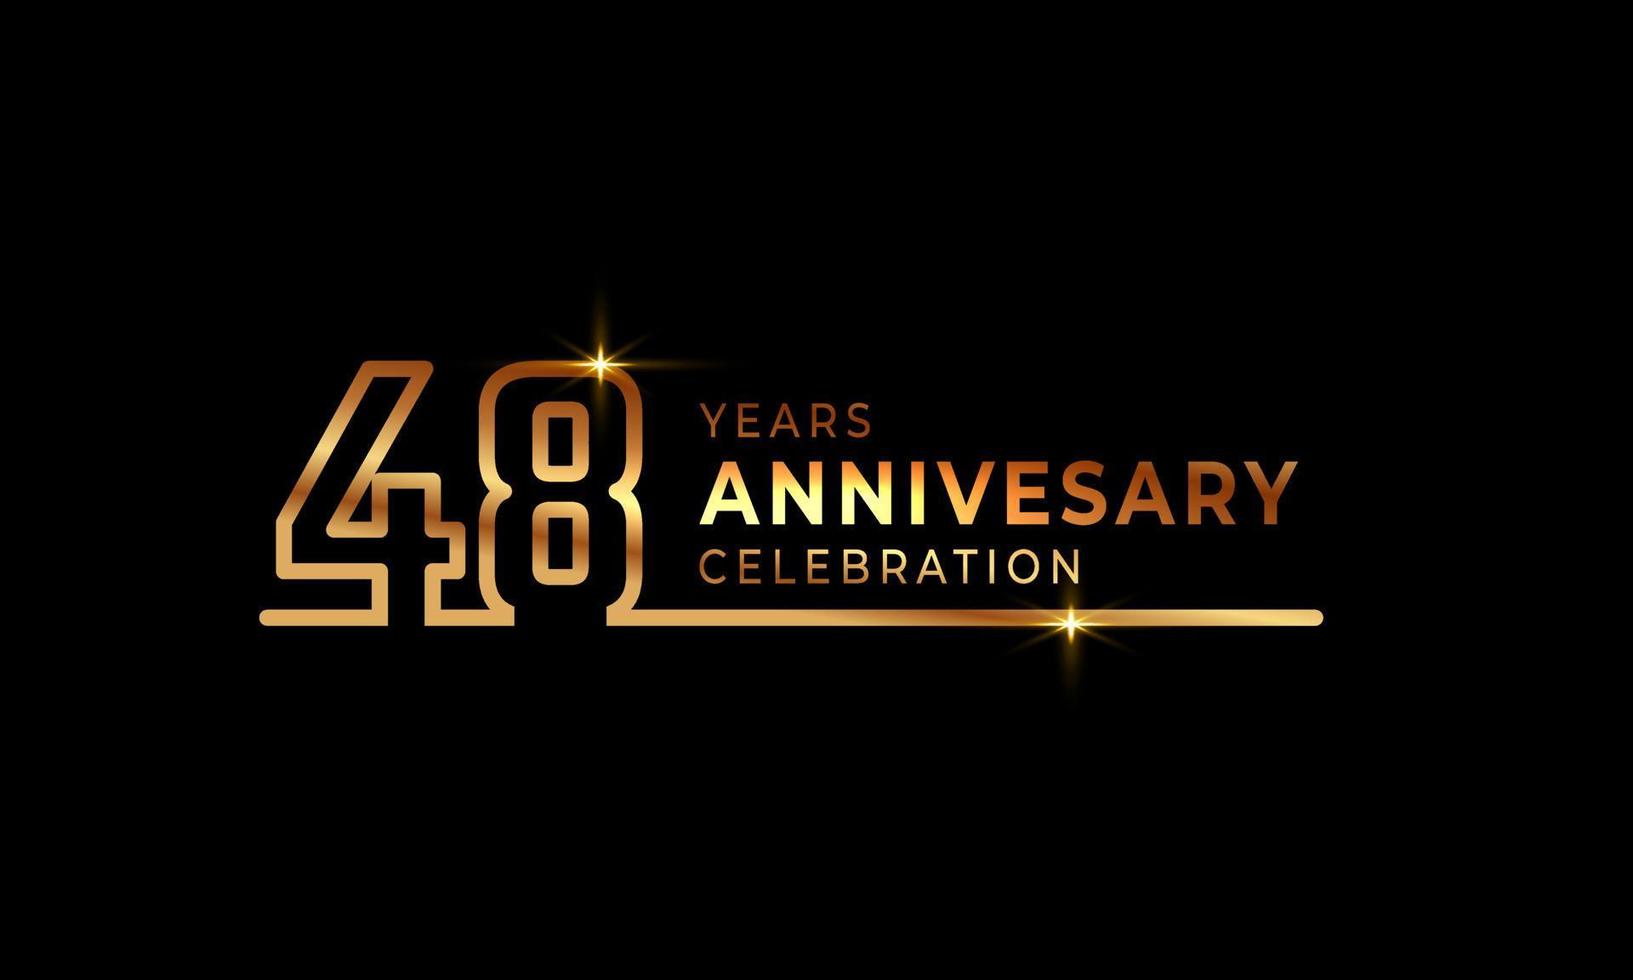 48-jarig jubileumviering logo met gouden gekleurde lettertypenummers gemaakt van één verbonden lijn voor feestgebeurtenis, bruiloft, wenskaart en uitnodiging geïsoleerd op donkere achtergrond vector